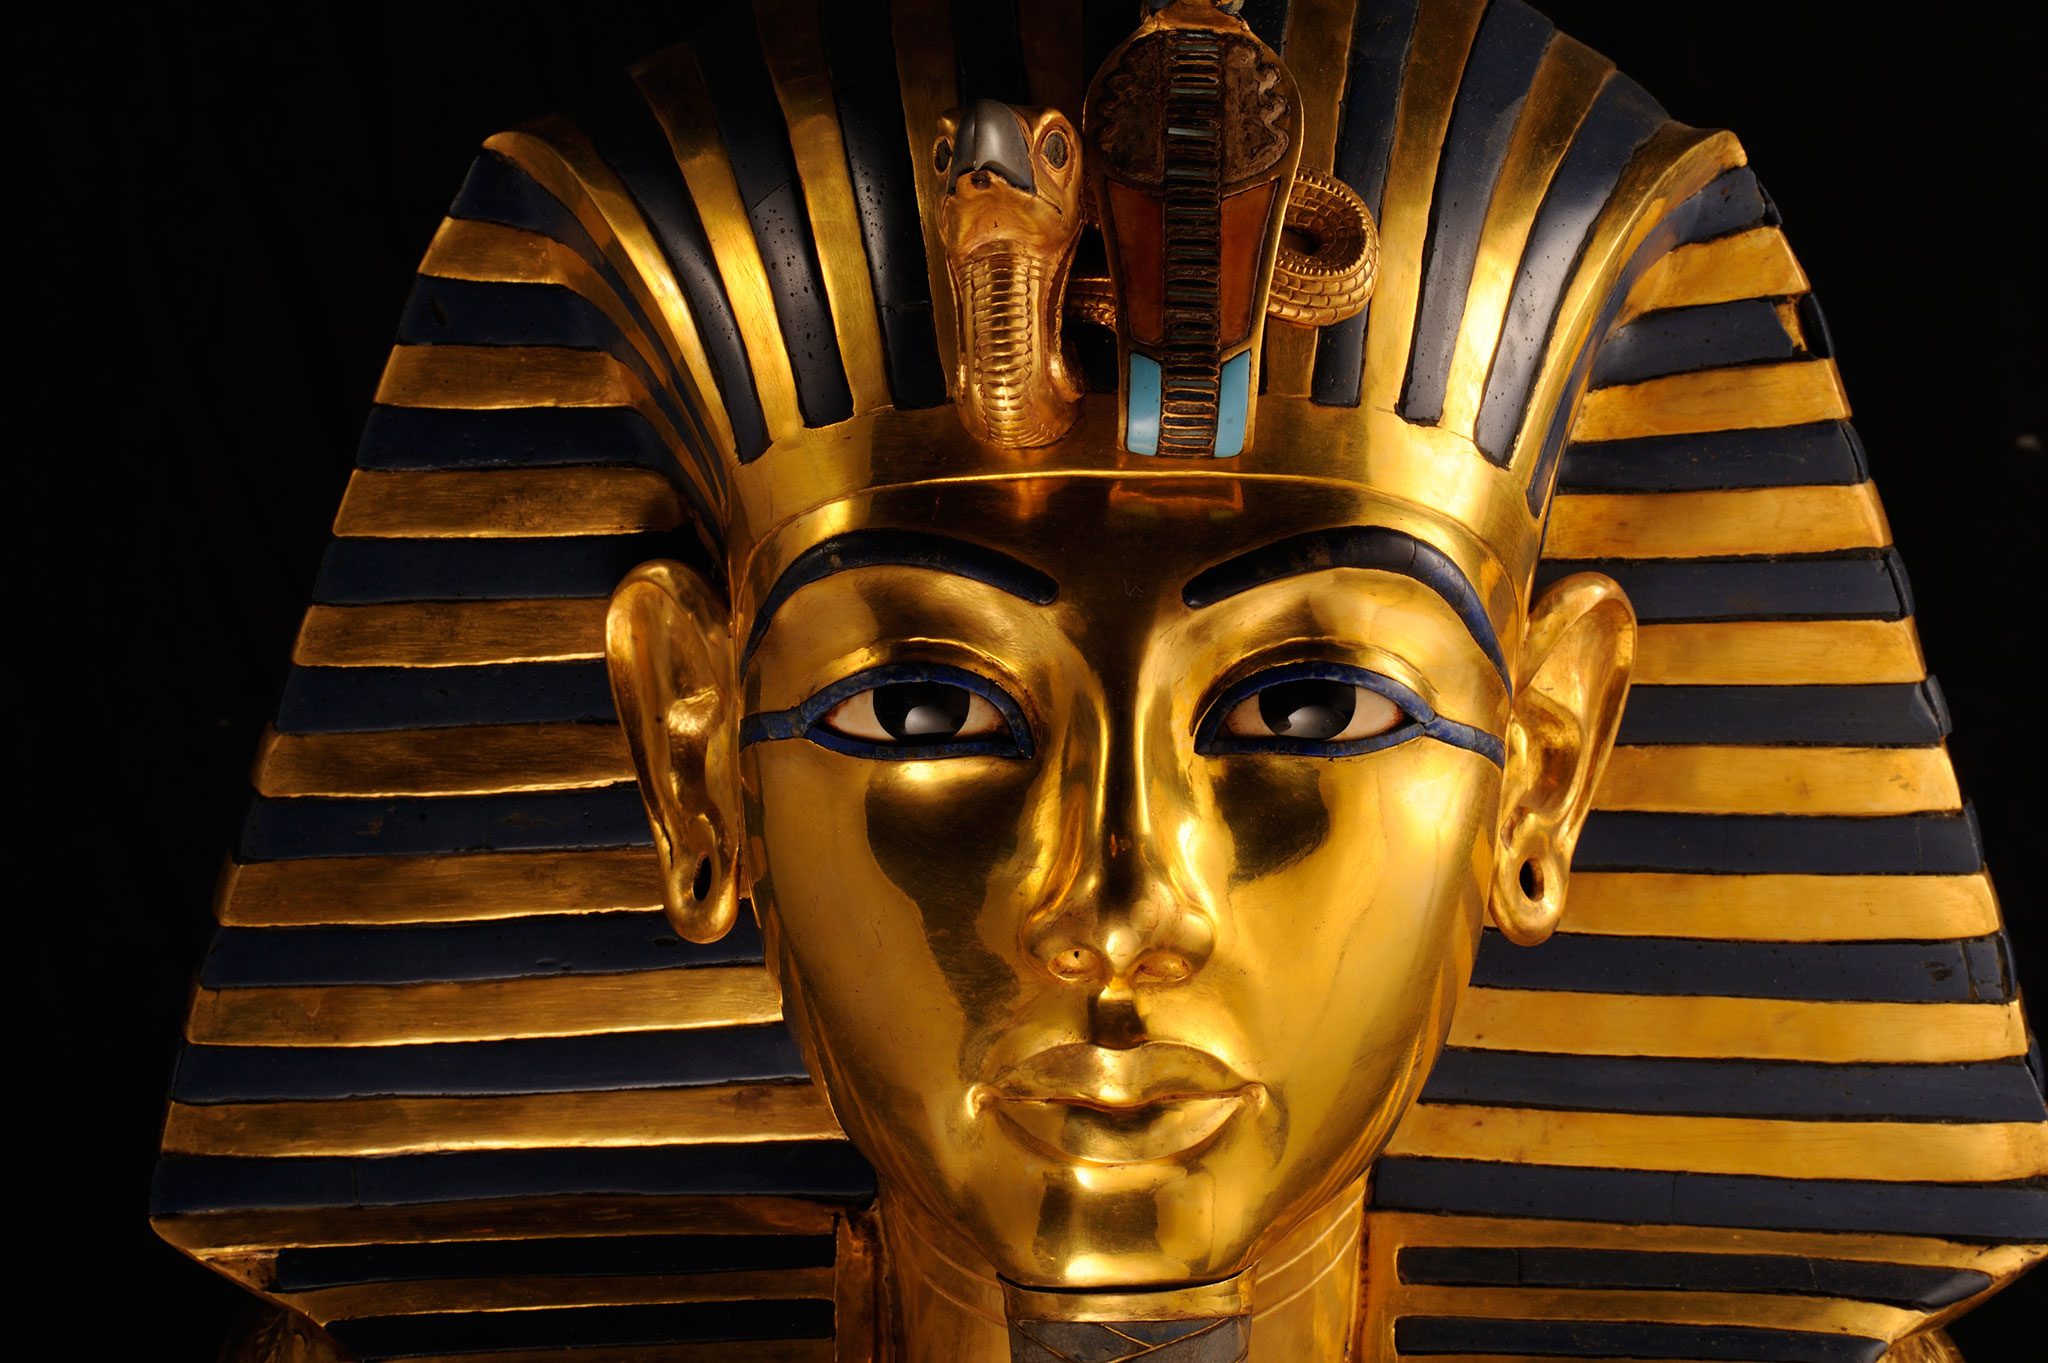  الفرعوني الذهبي توت آمون يفجر أزمة بين لندن والقاهرة